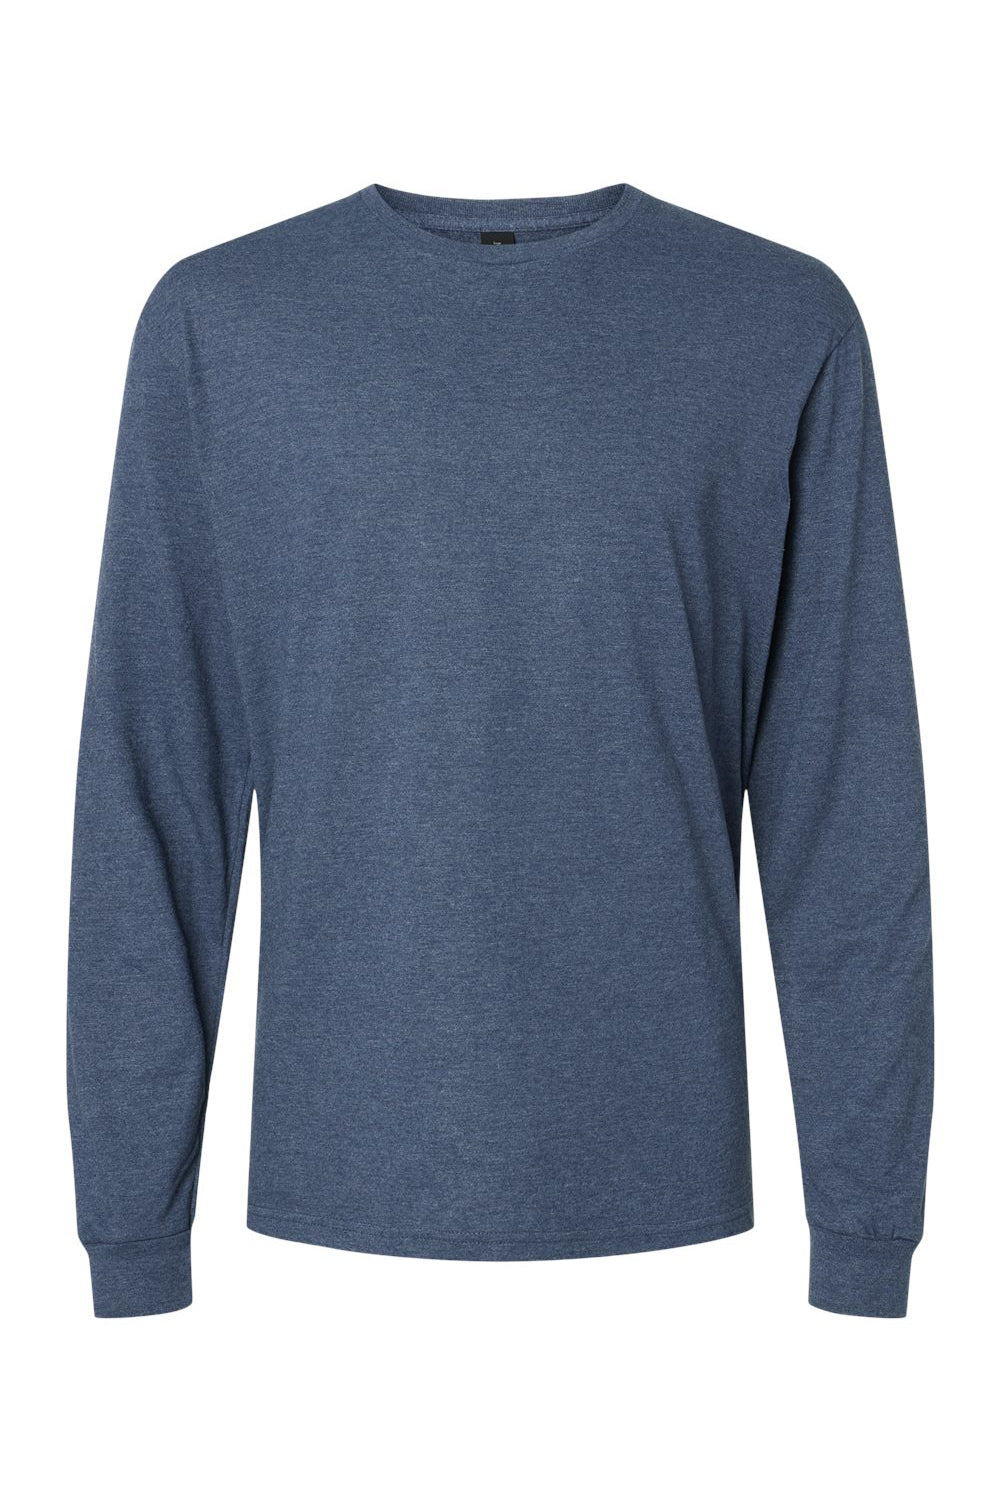 Gildan 67400 Mens Softstyle CVC Long Sleeve Crewneck T-Shirt Navy Blue Mist Flat Front